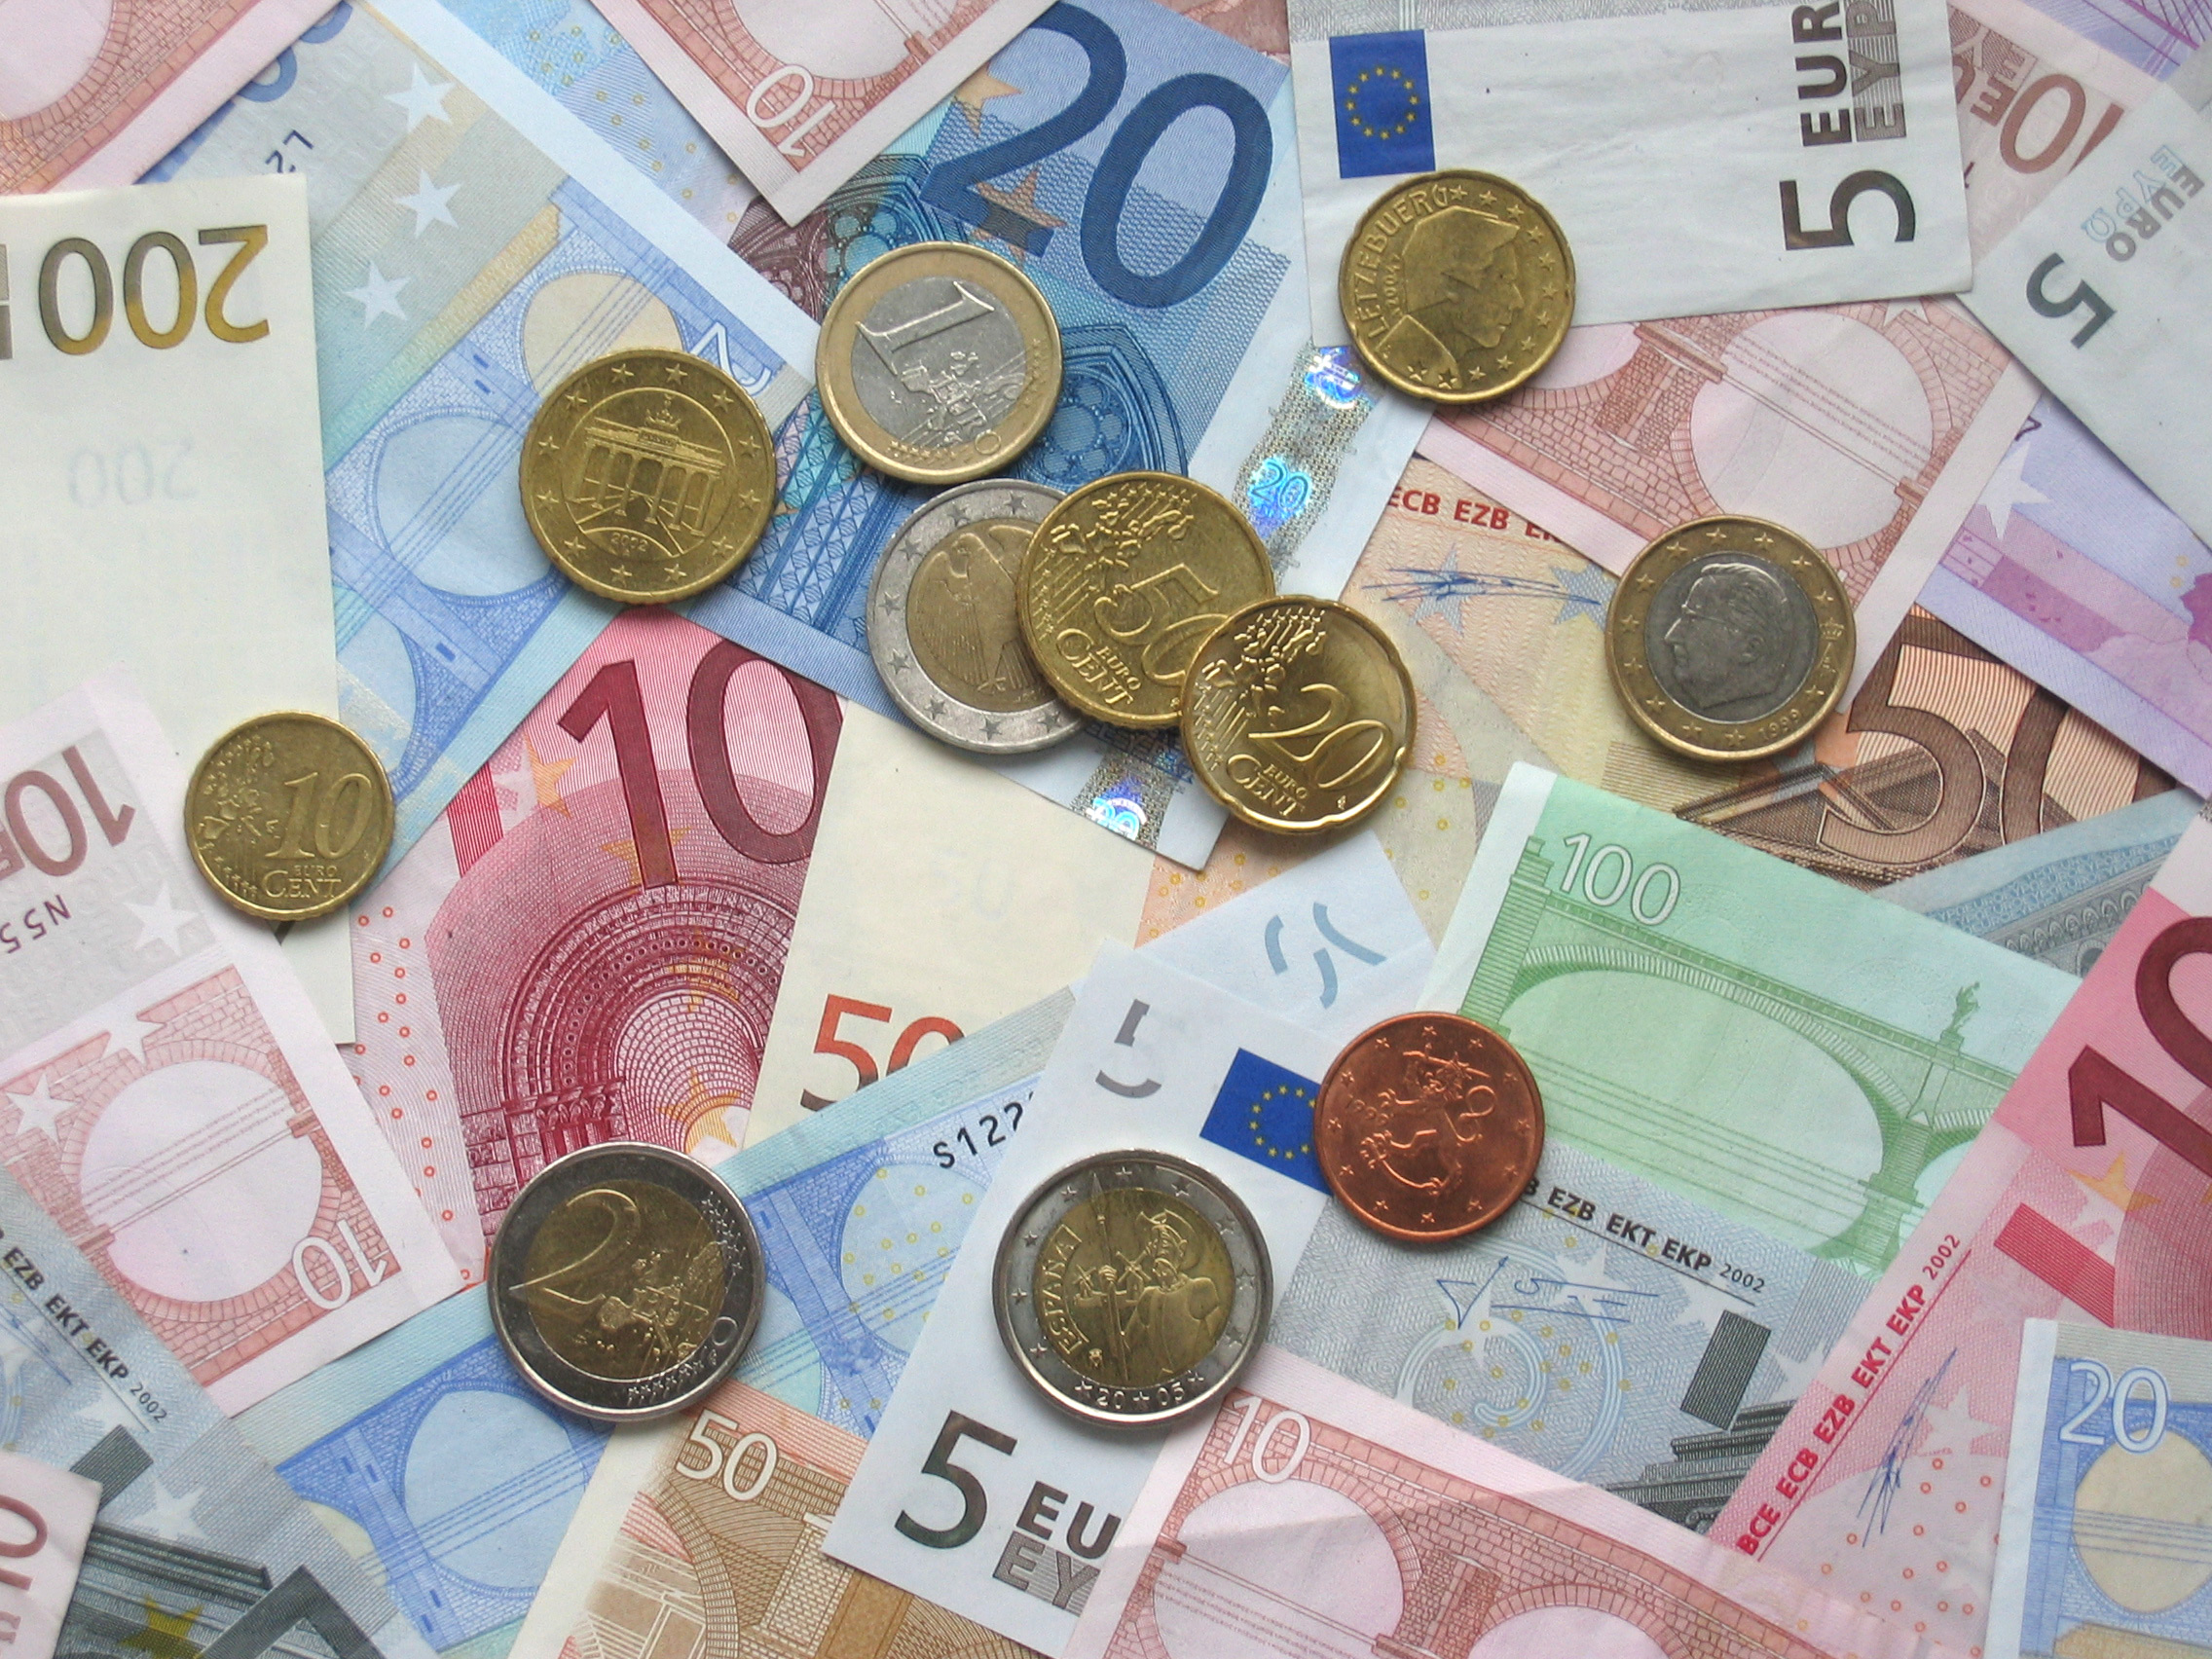 Οι Λετονοί δεν θέλουν το ευρώ